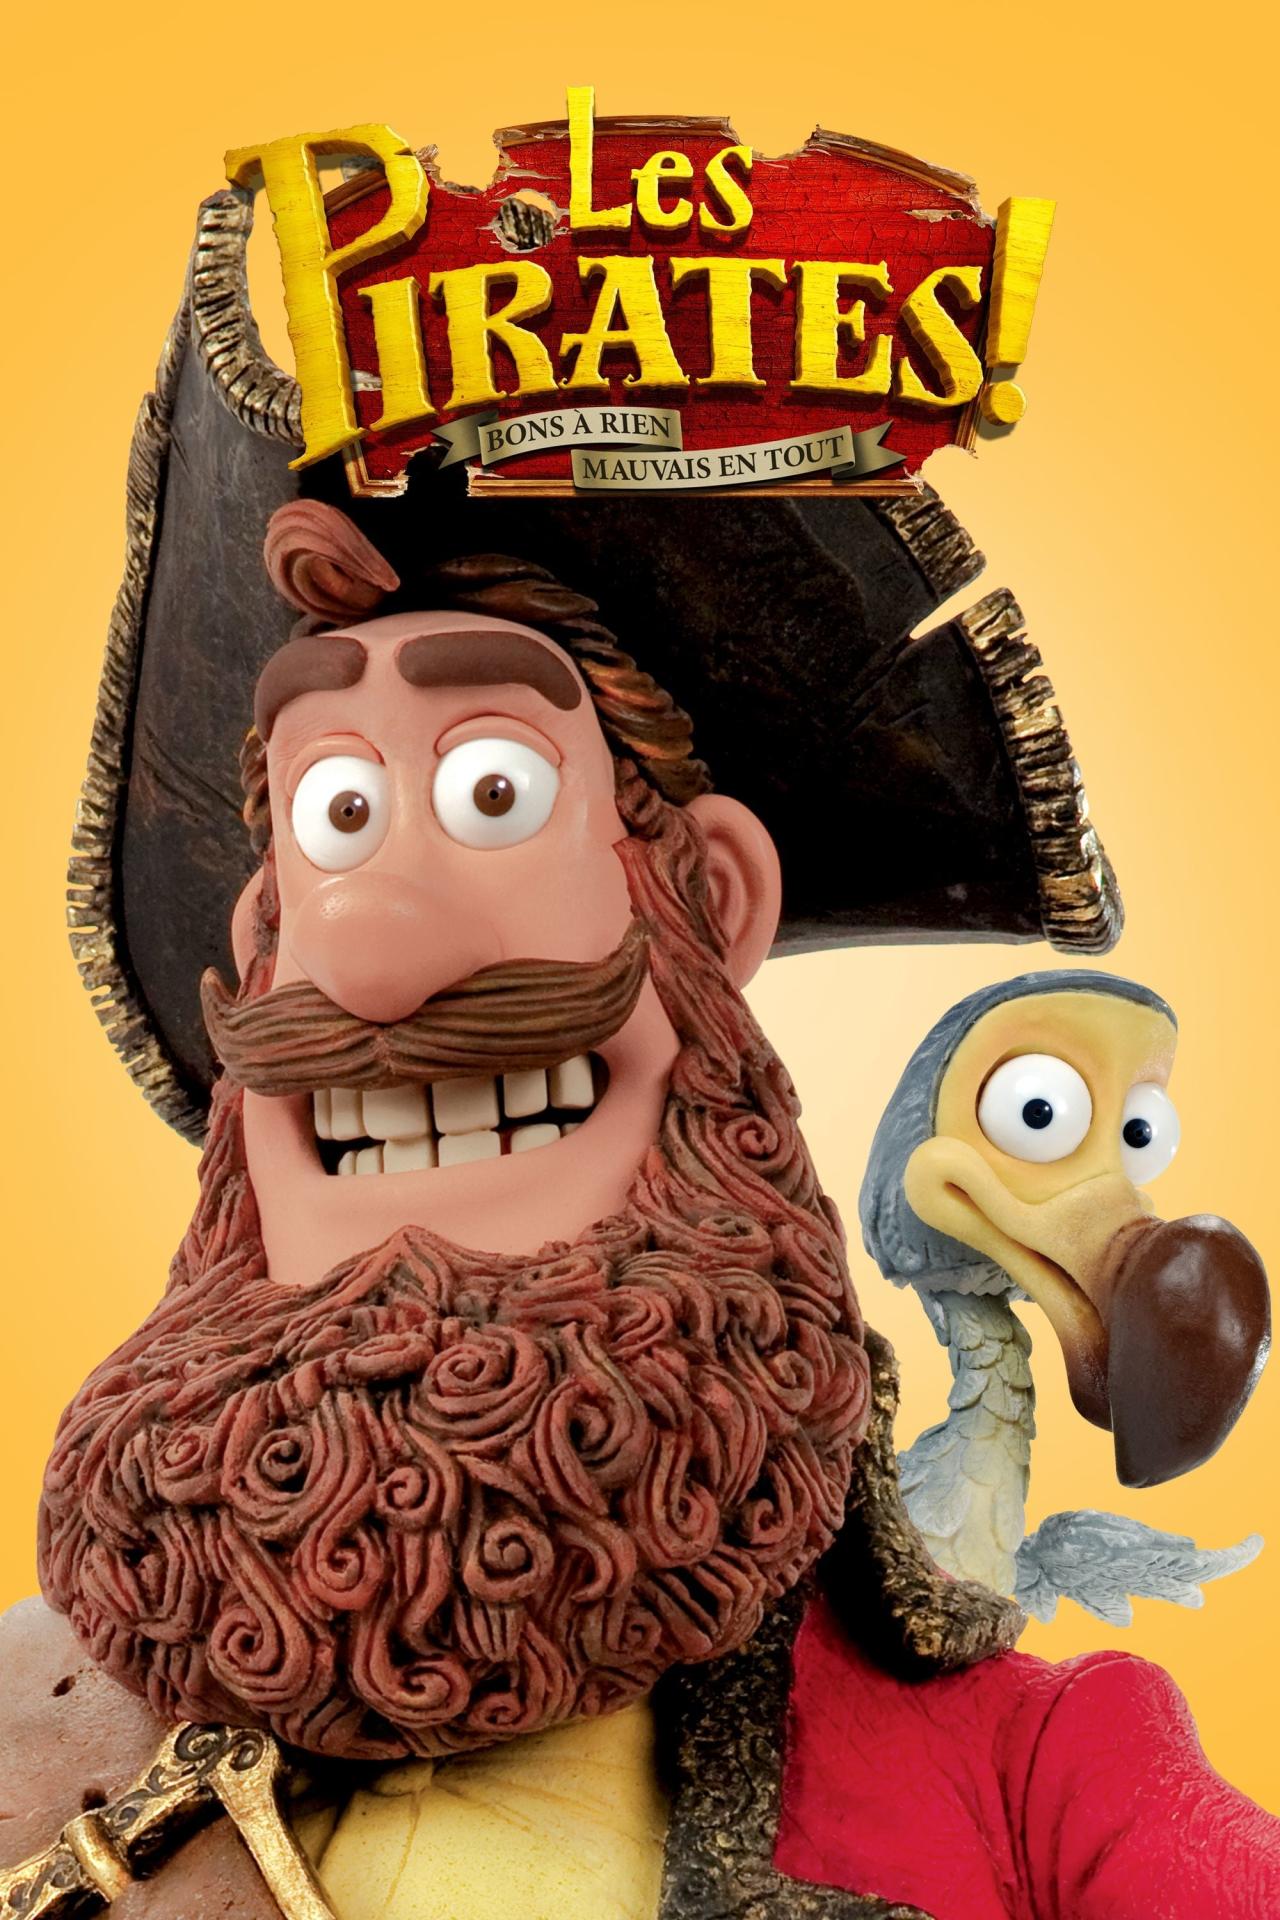 Les Pirates ! Bons à rien, mauvais en tout est-il disponible sur Netflix ou autre ?